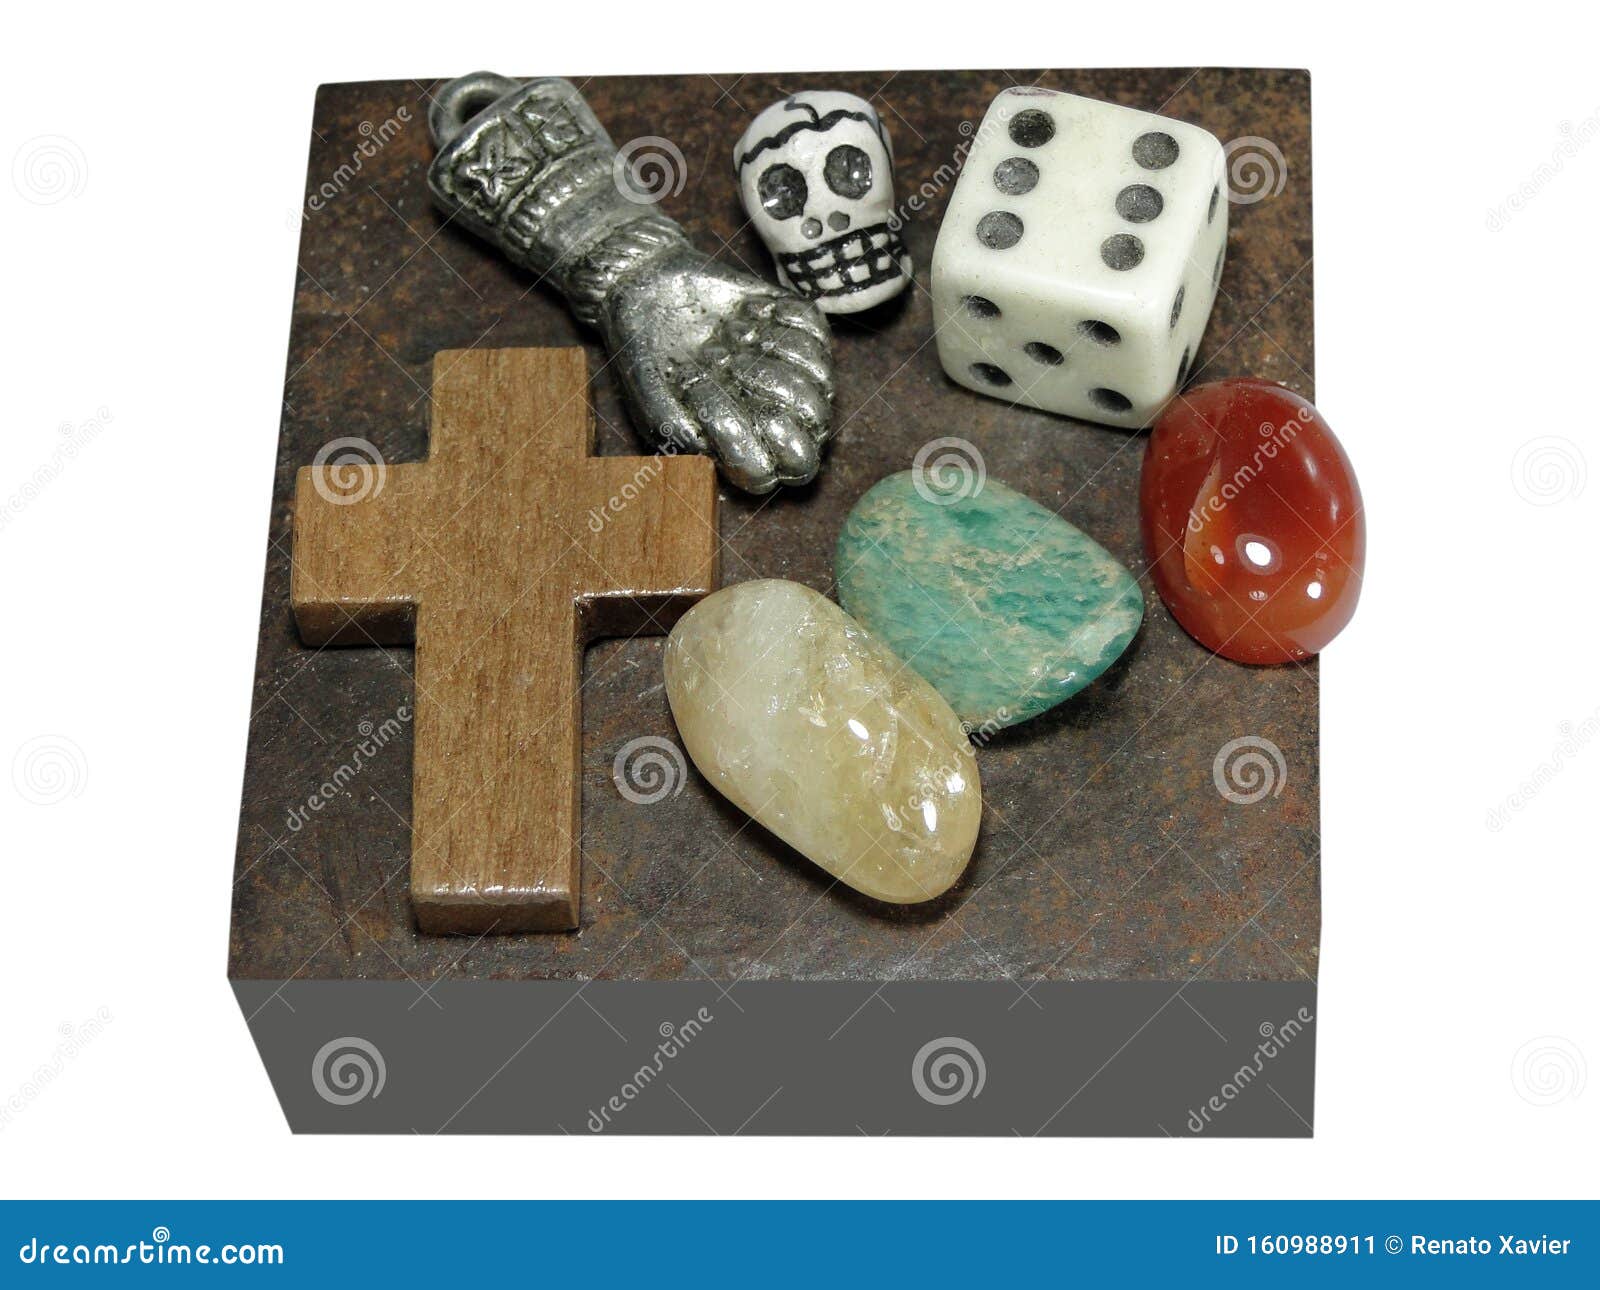 mesa mÃÂ ÃÂ­stica com pedras, sÃÂ ÃÂ­bolos e objetos xamÃÂ¢nicos.